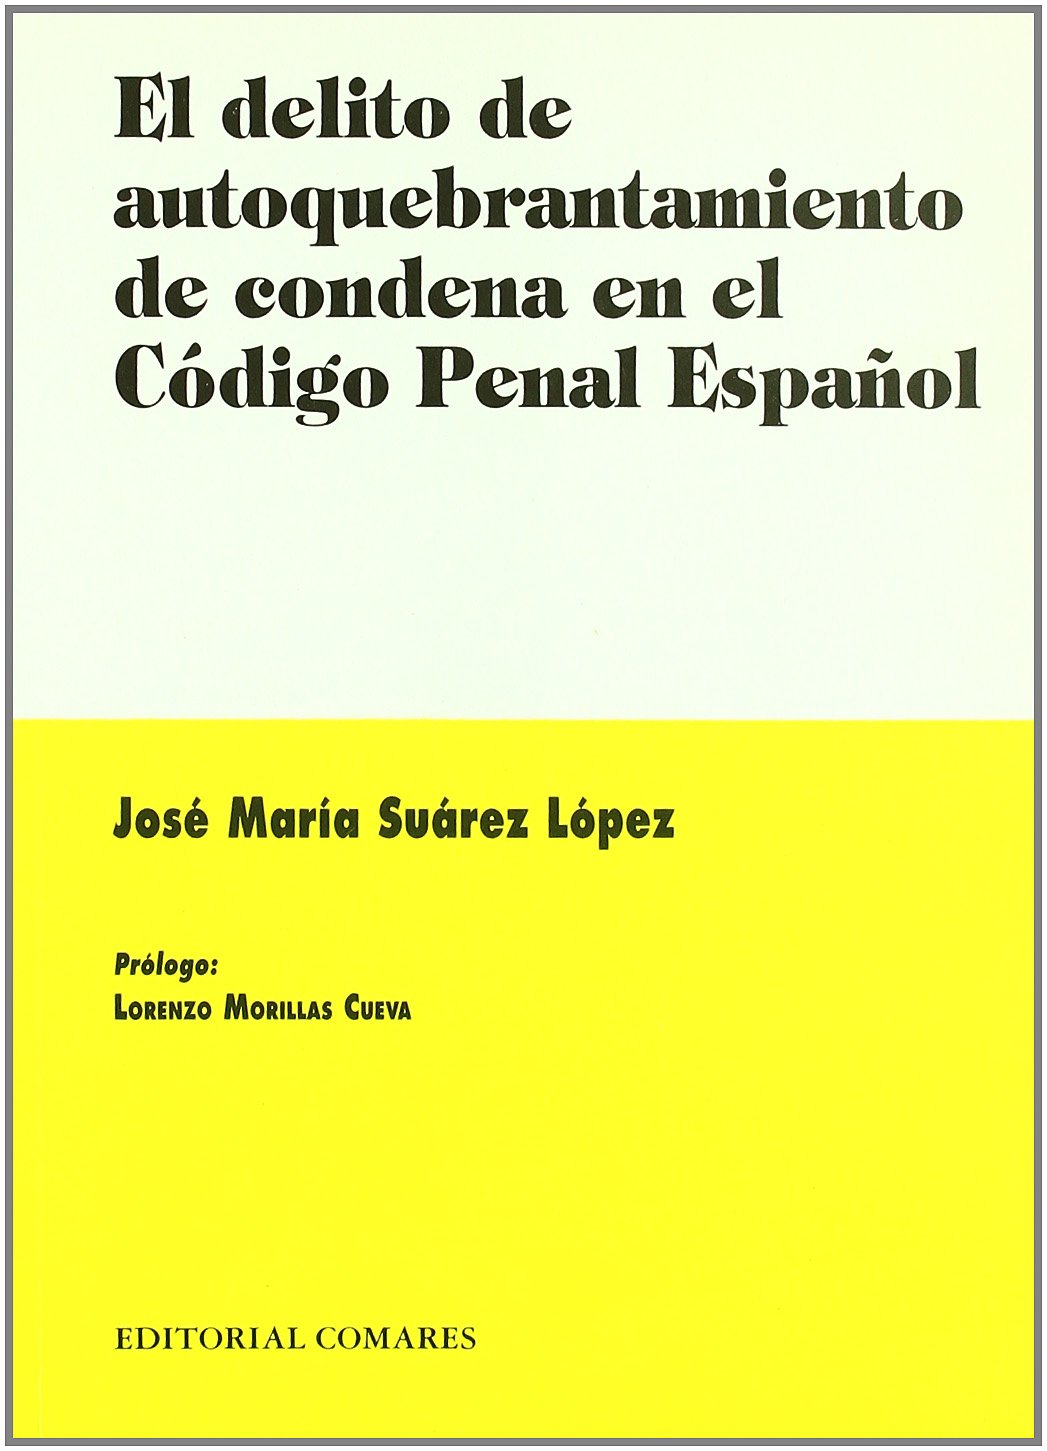 El delito de autoquebrantamiento de condena en el Código penal español. 9788484440635